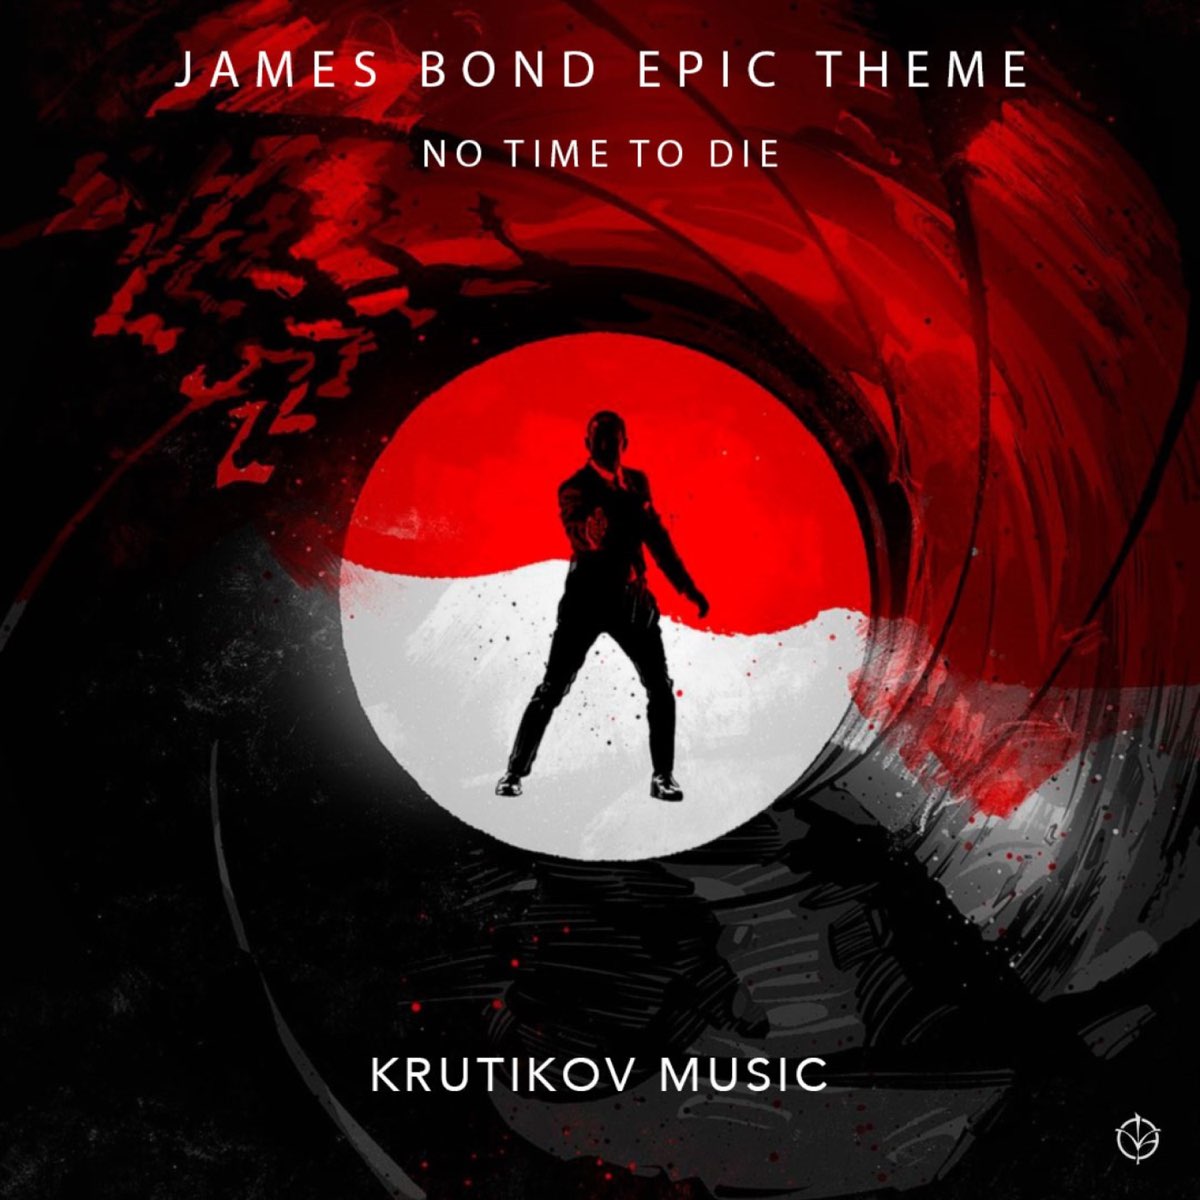 Avengers: The Kang Dynasty & Secret Wars Music (Epic Trailer Version) -  Song by Krutikov Music - Apple Music